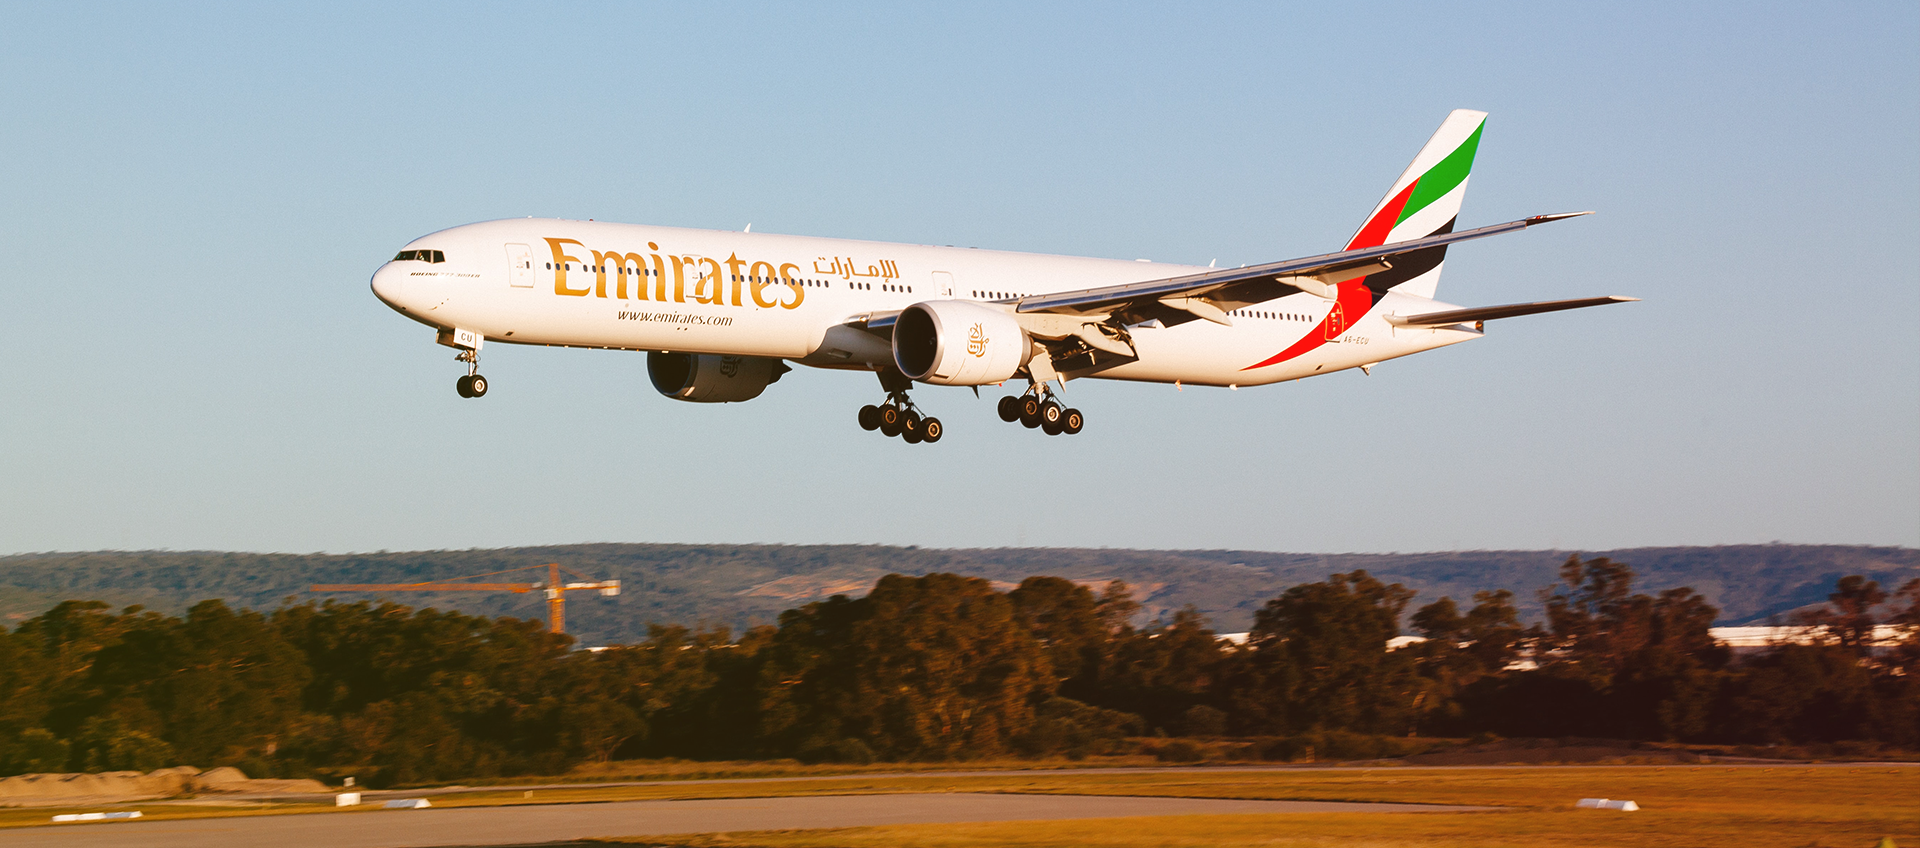 Plane landing at Perth Airport